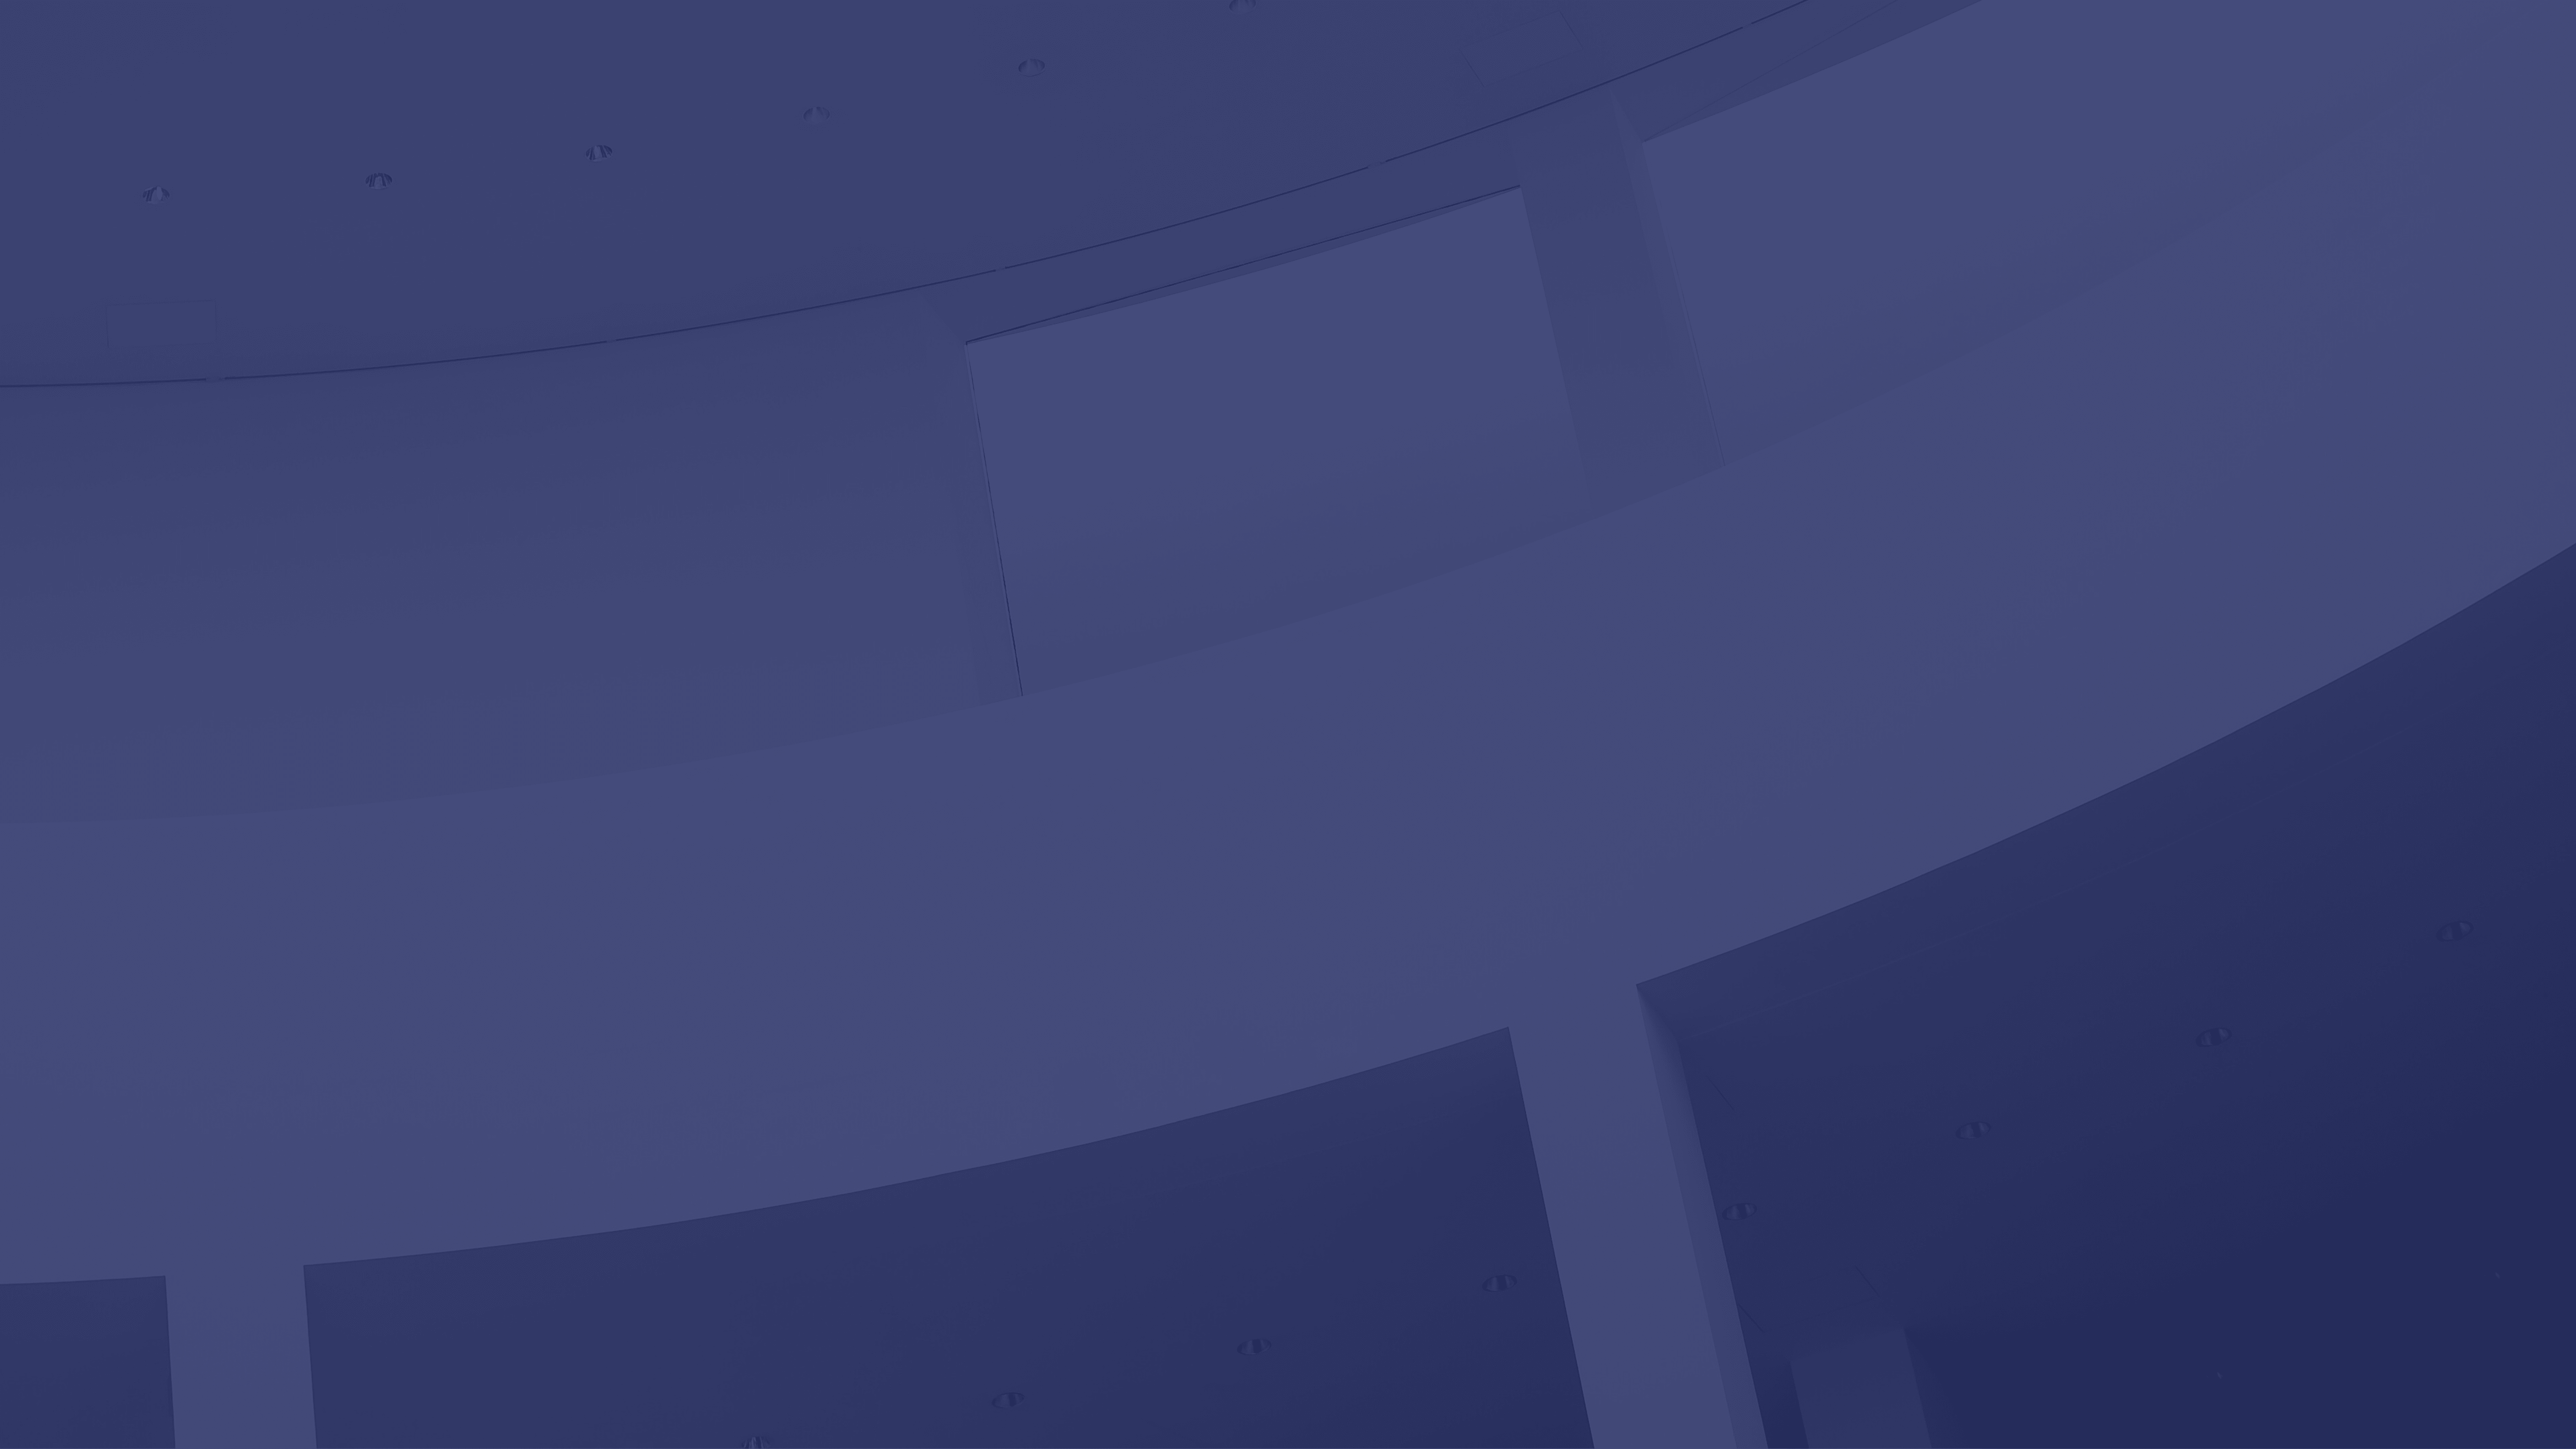 Imagen de fondo azul con bloques de concreto